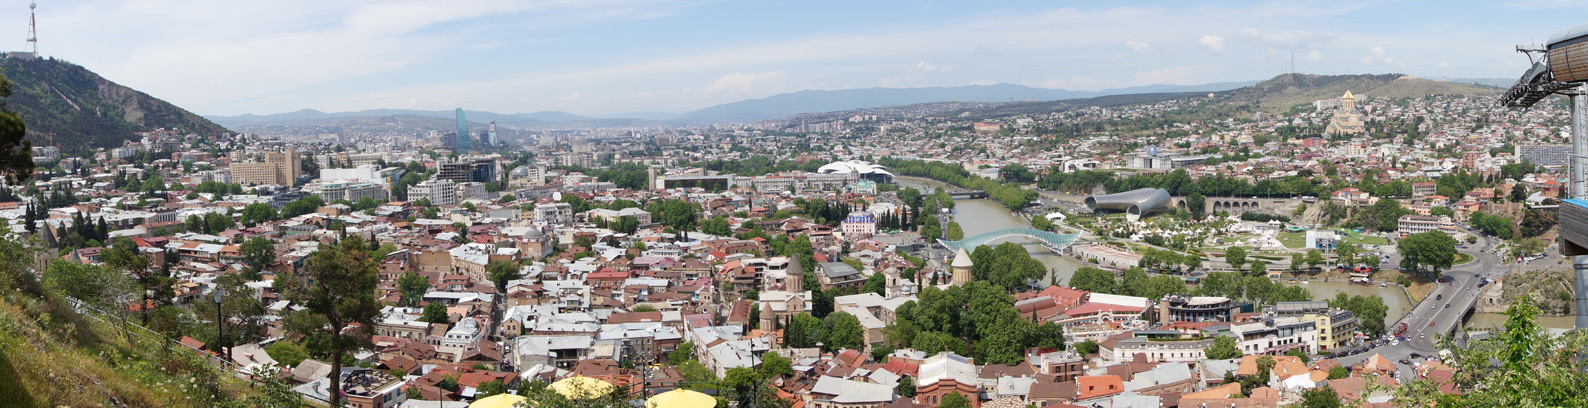 Тбилиси, Грузия, весна 2018